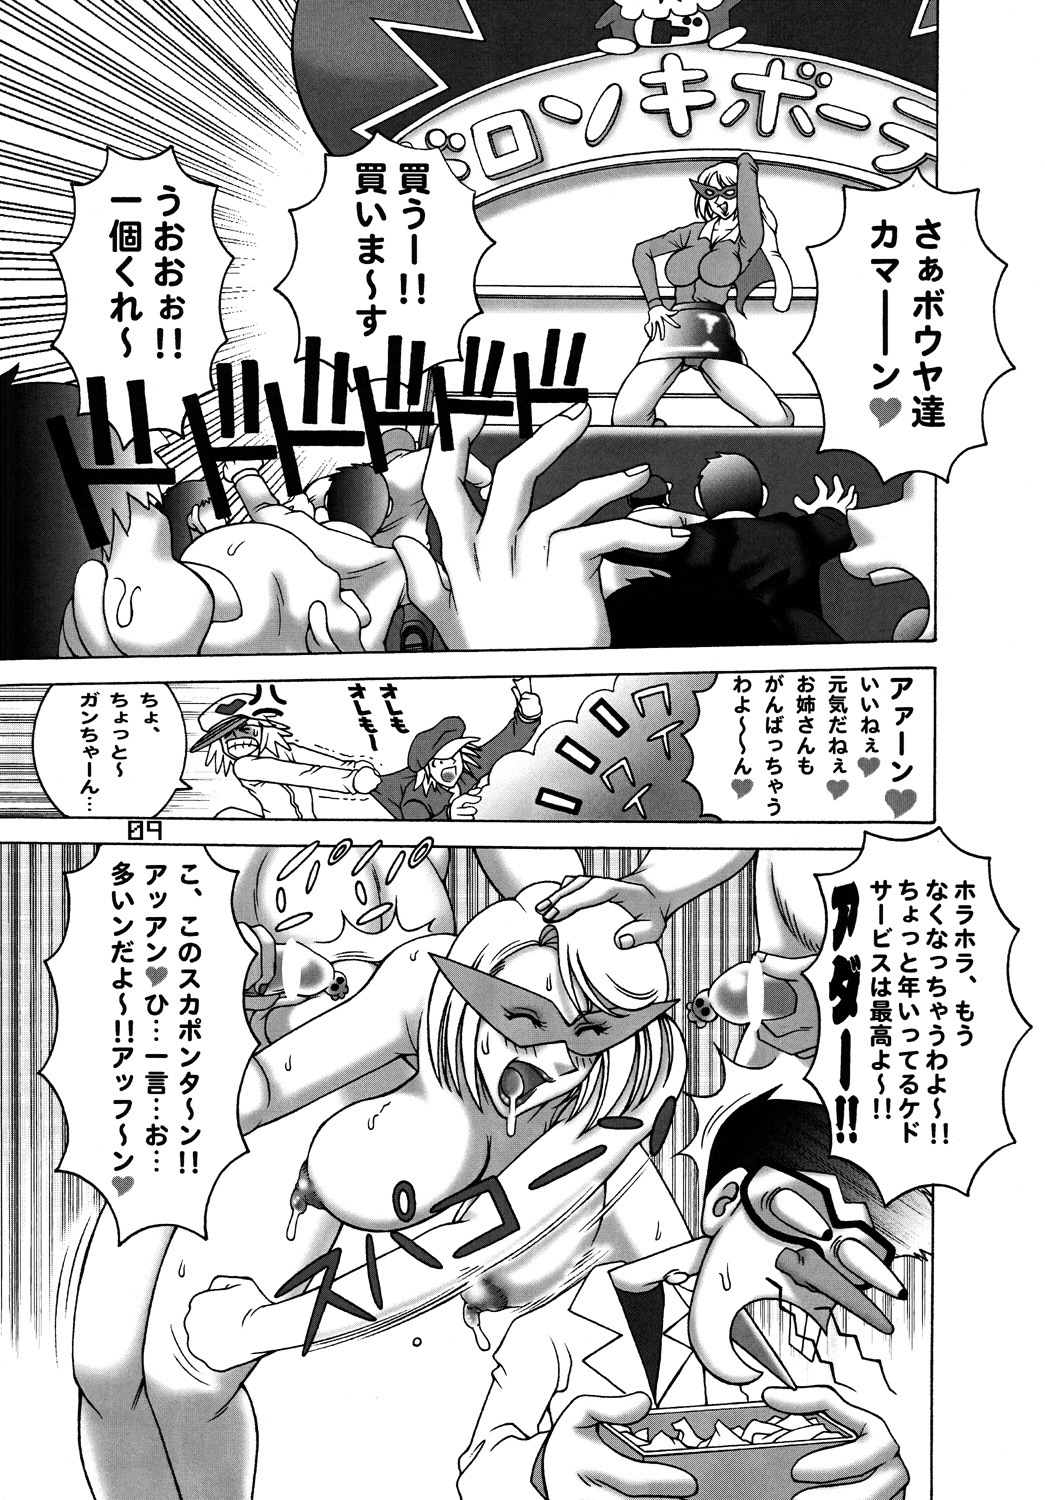 [DYNAMITE HONEY] Tatsunoko Dynamite page 8 full